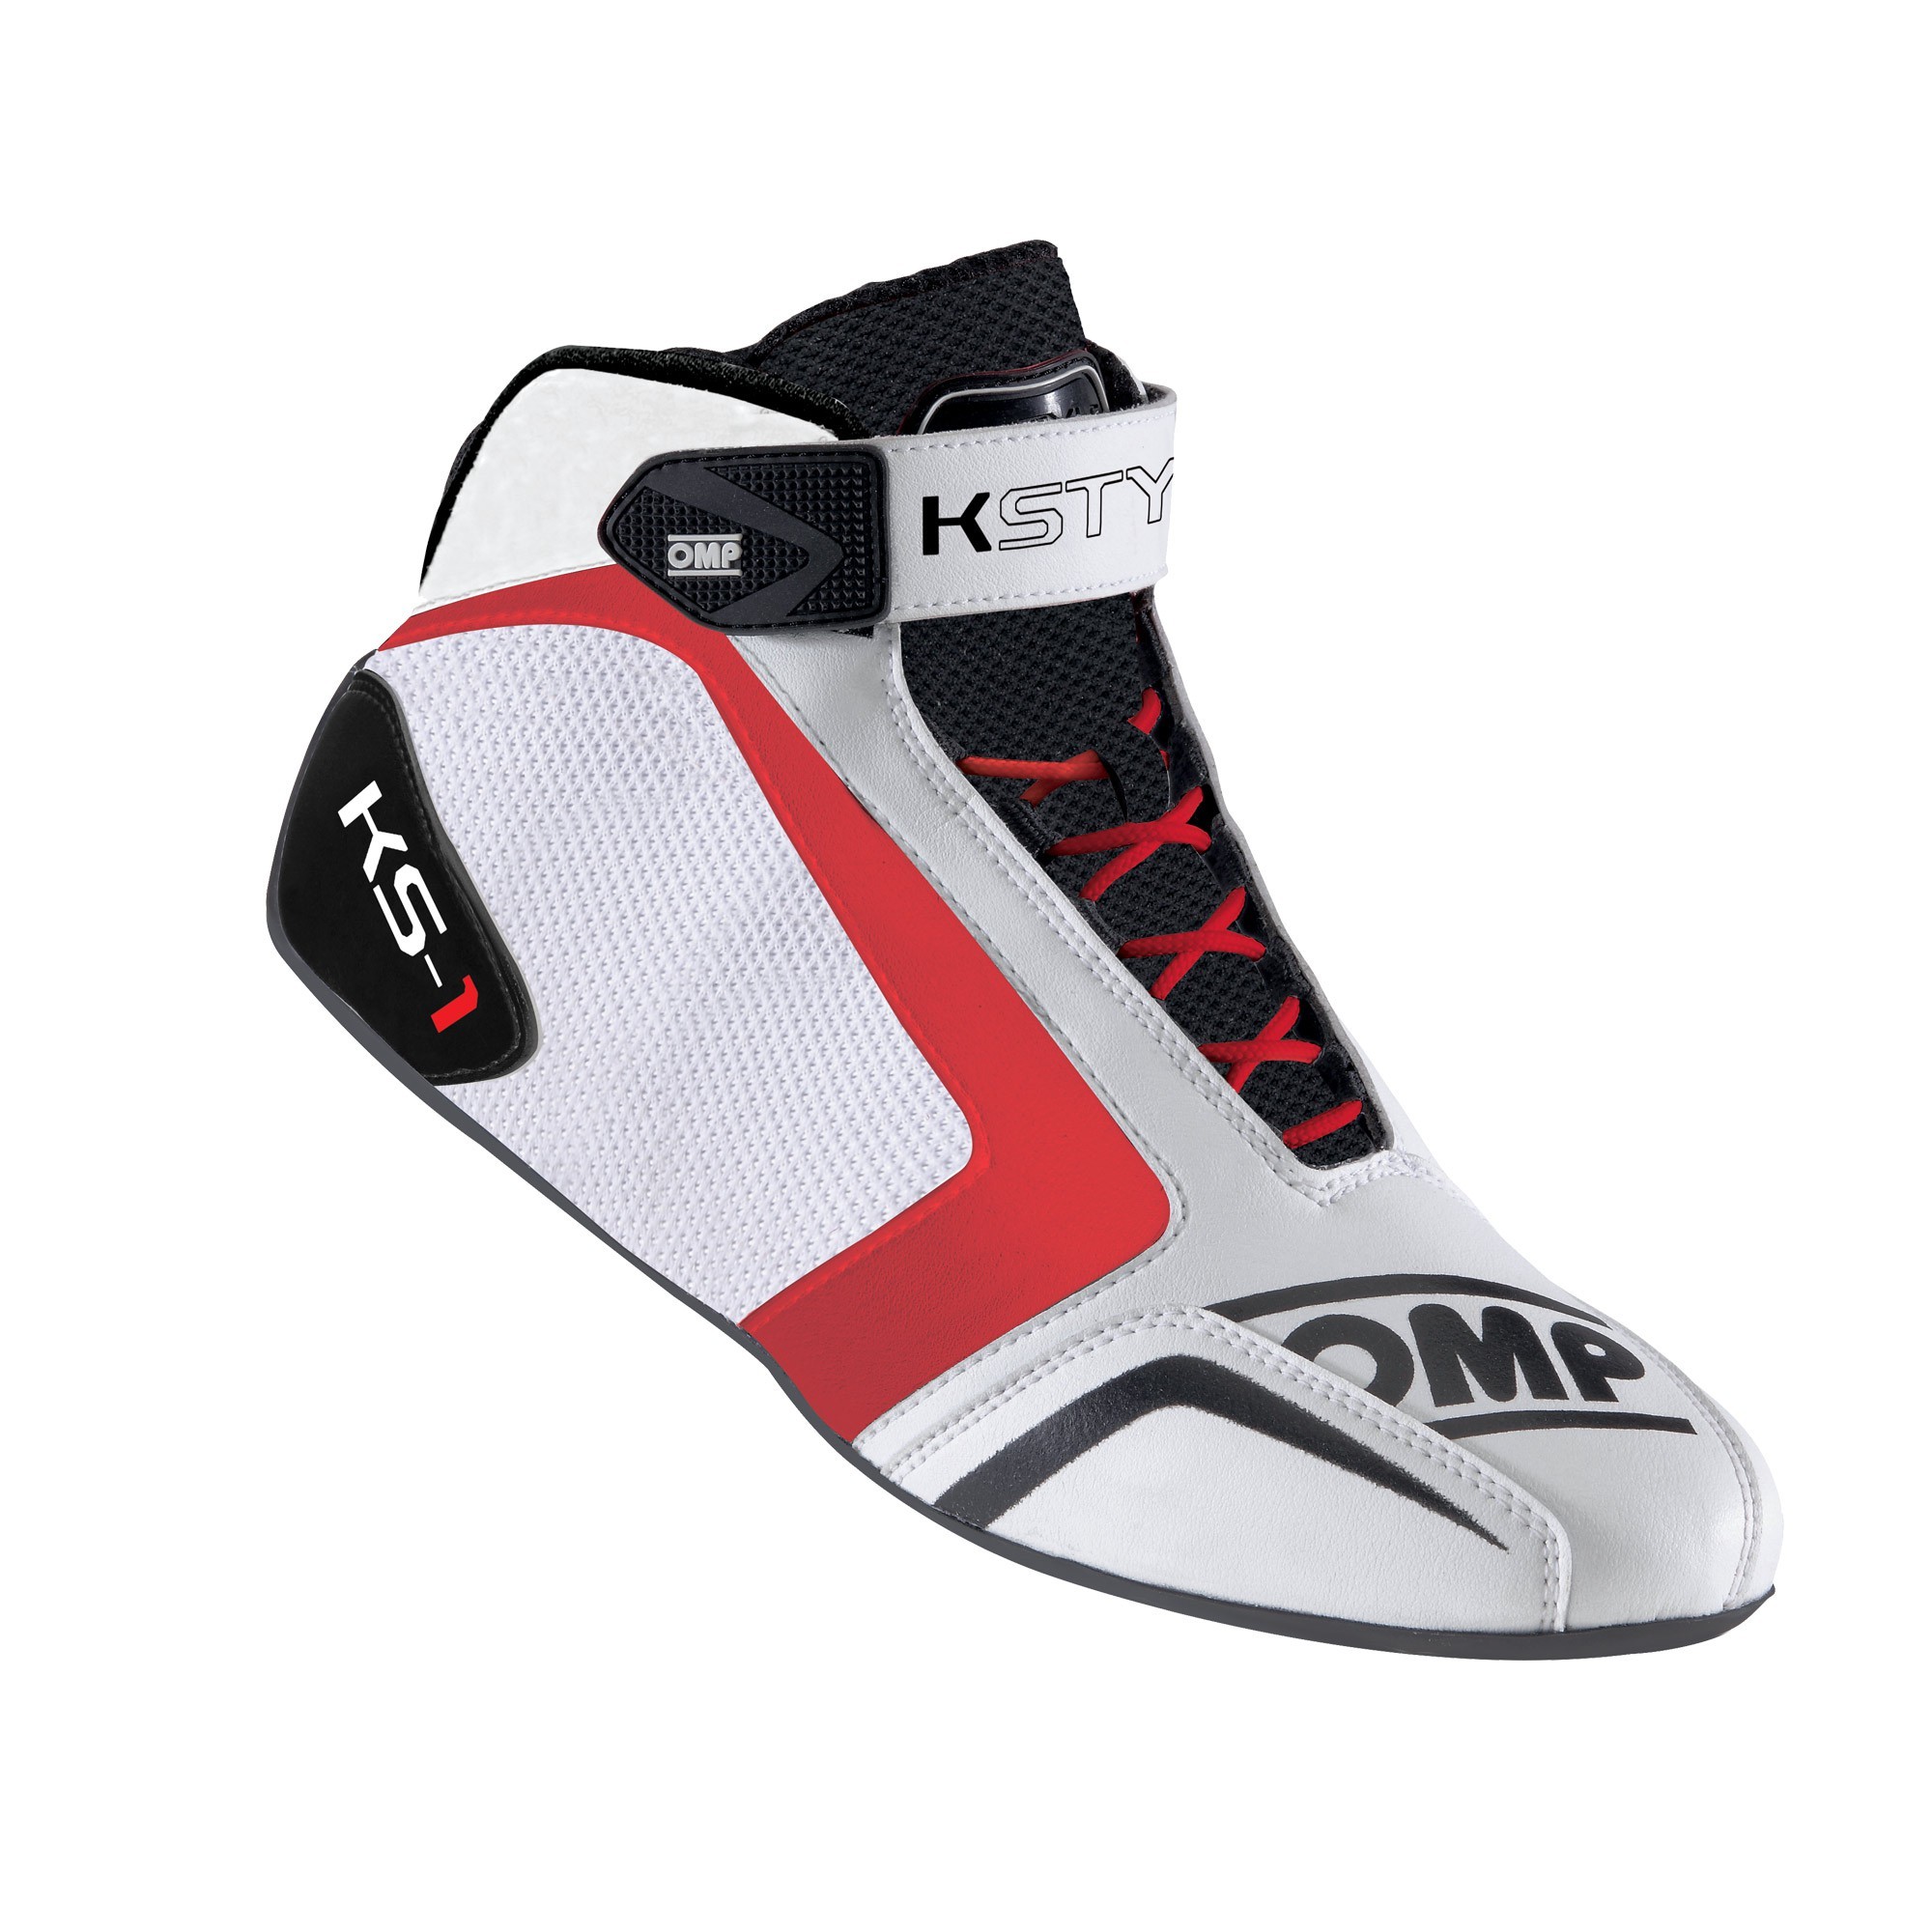 Renovatie Bliksem Diagnostiseren KS-1 SHOES - Karting shoes | OMP Racing